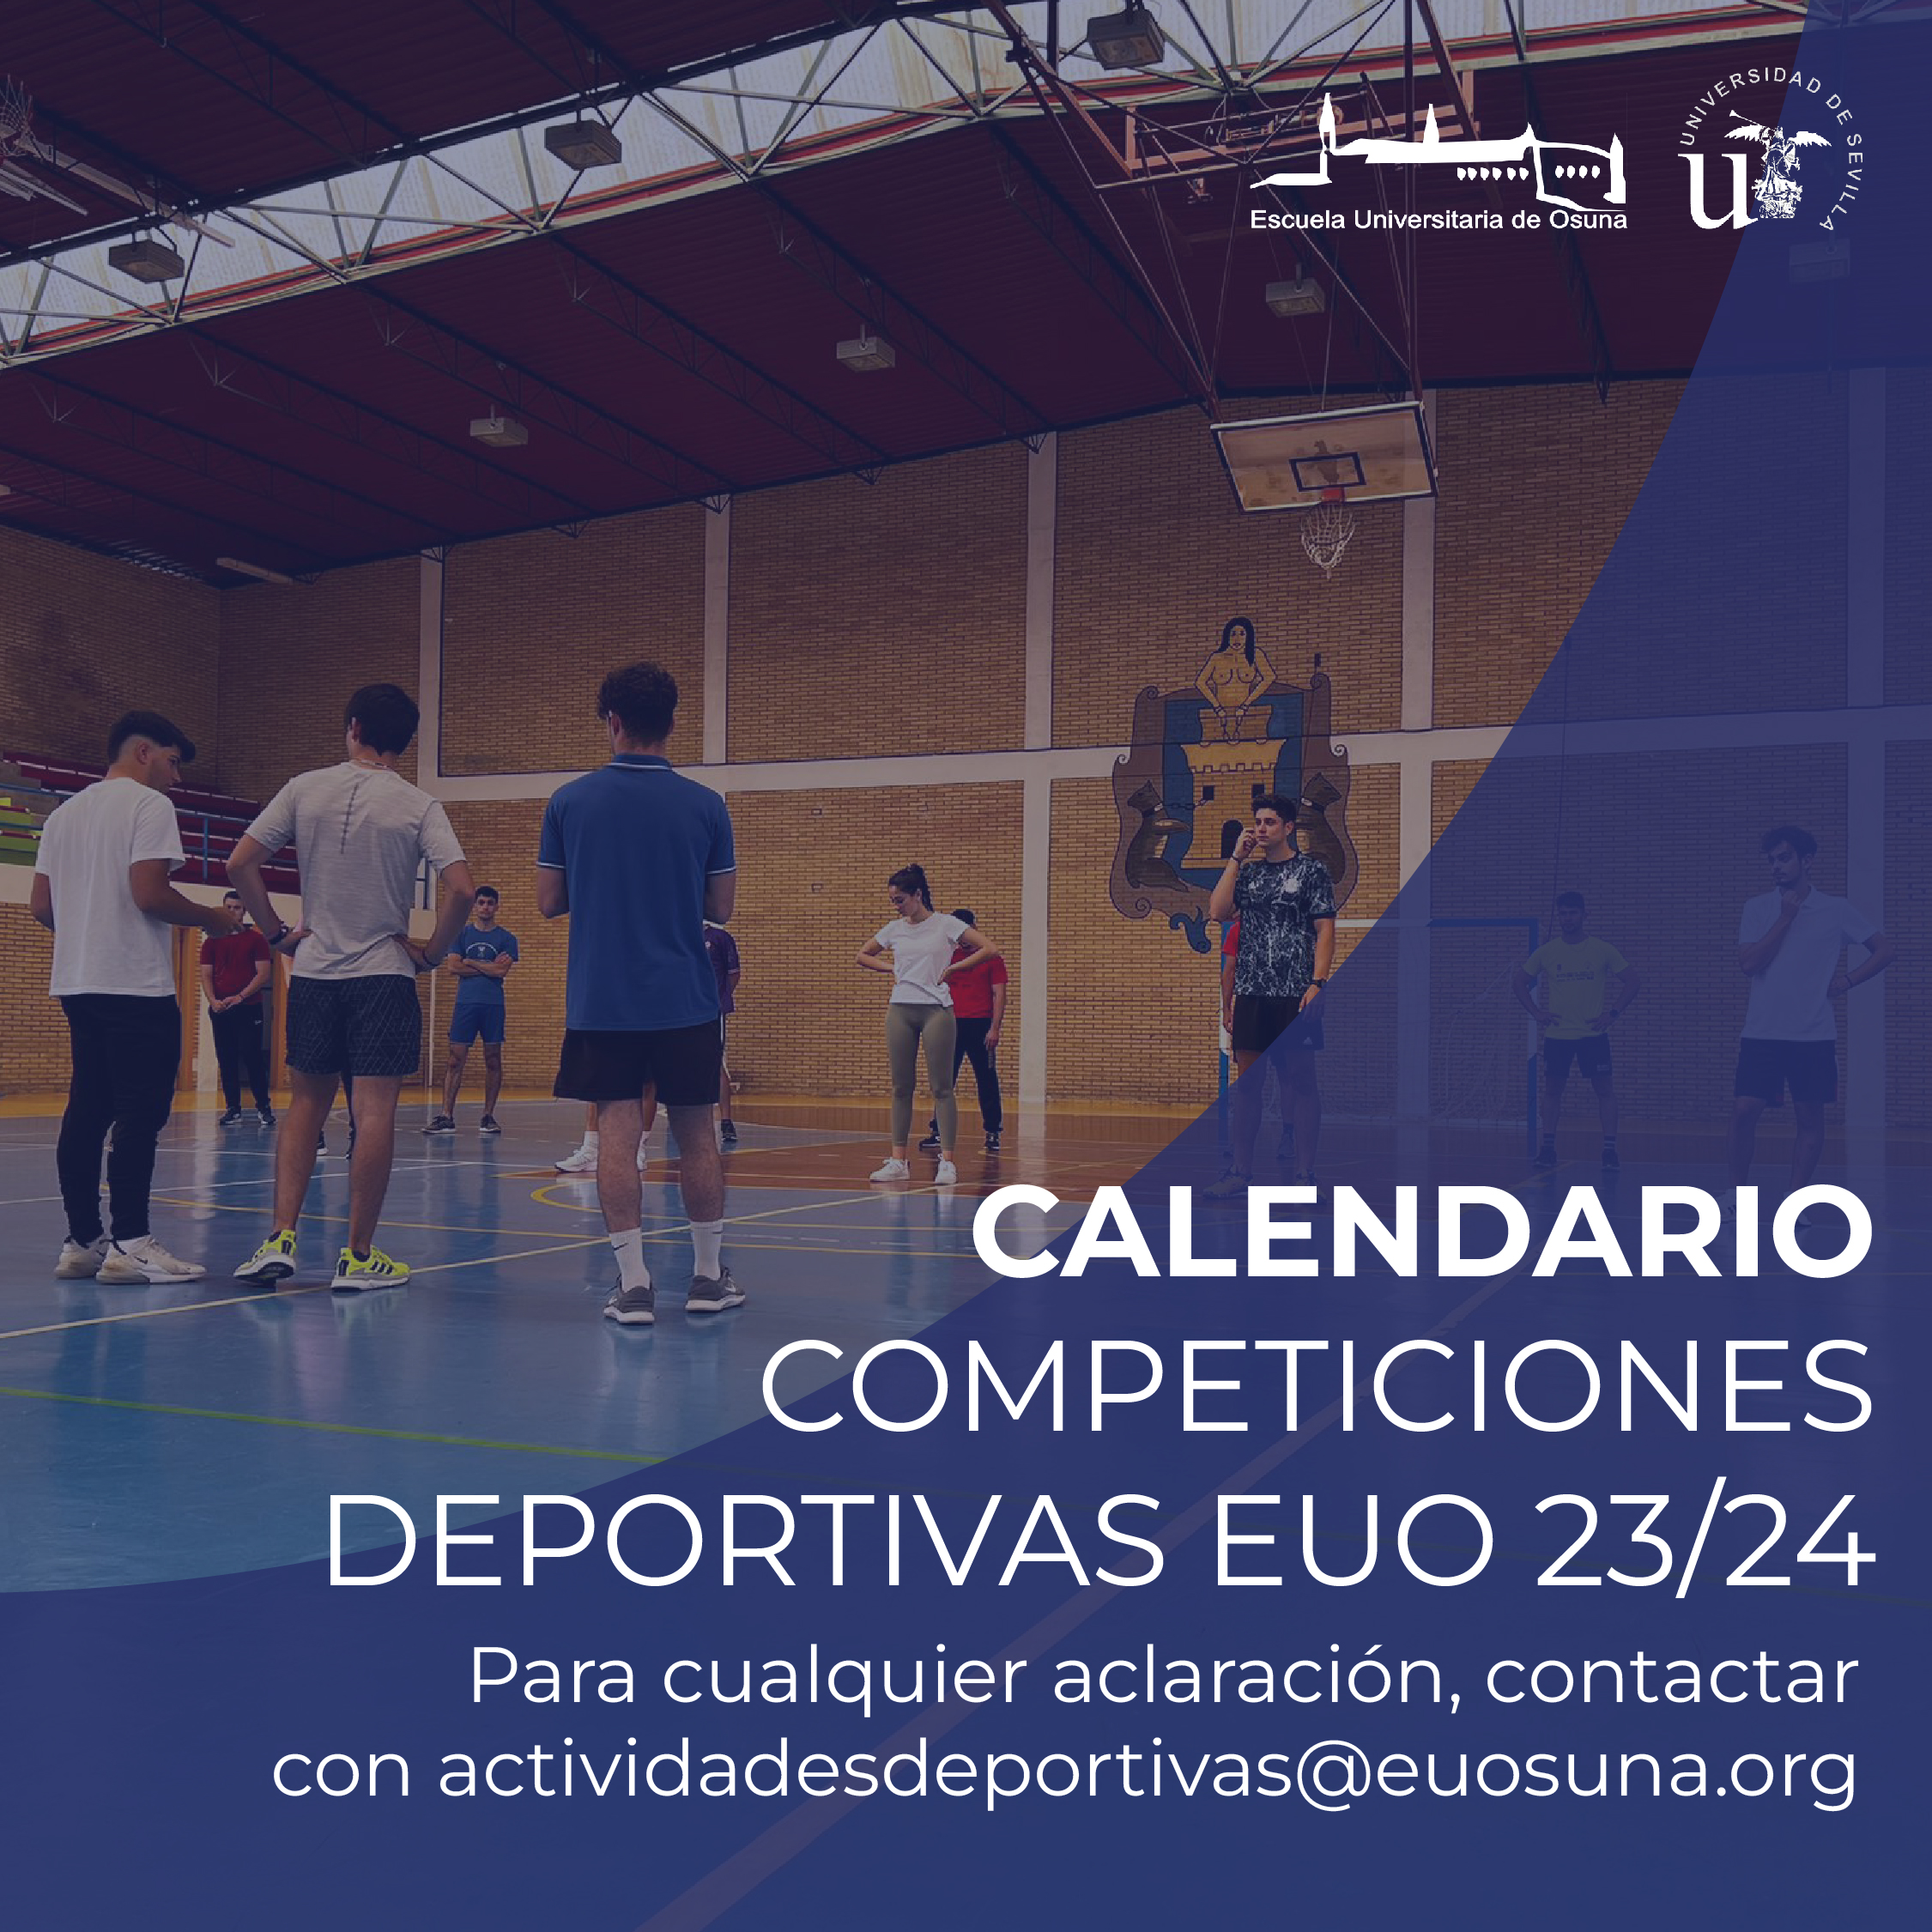 Calendario Competiciones Deportivas EUO 2023/24